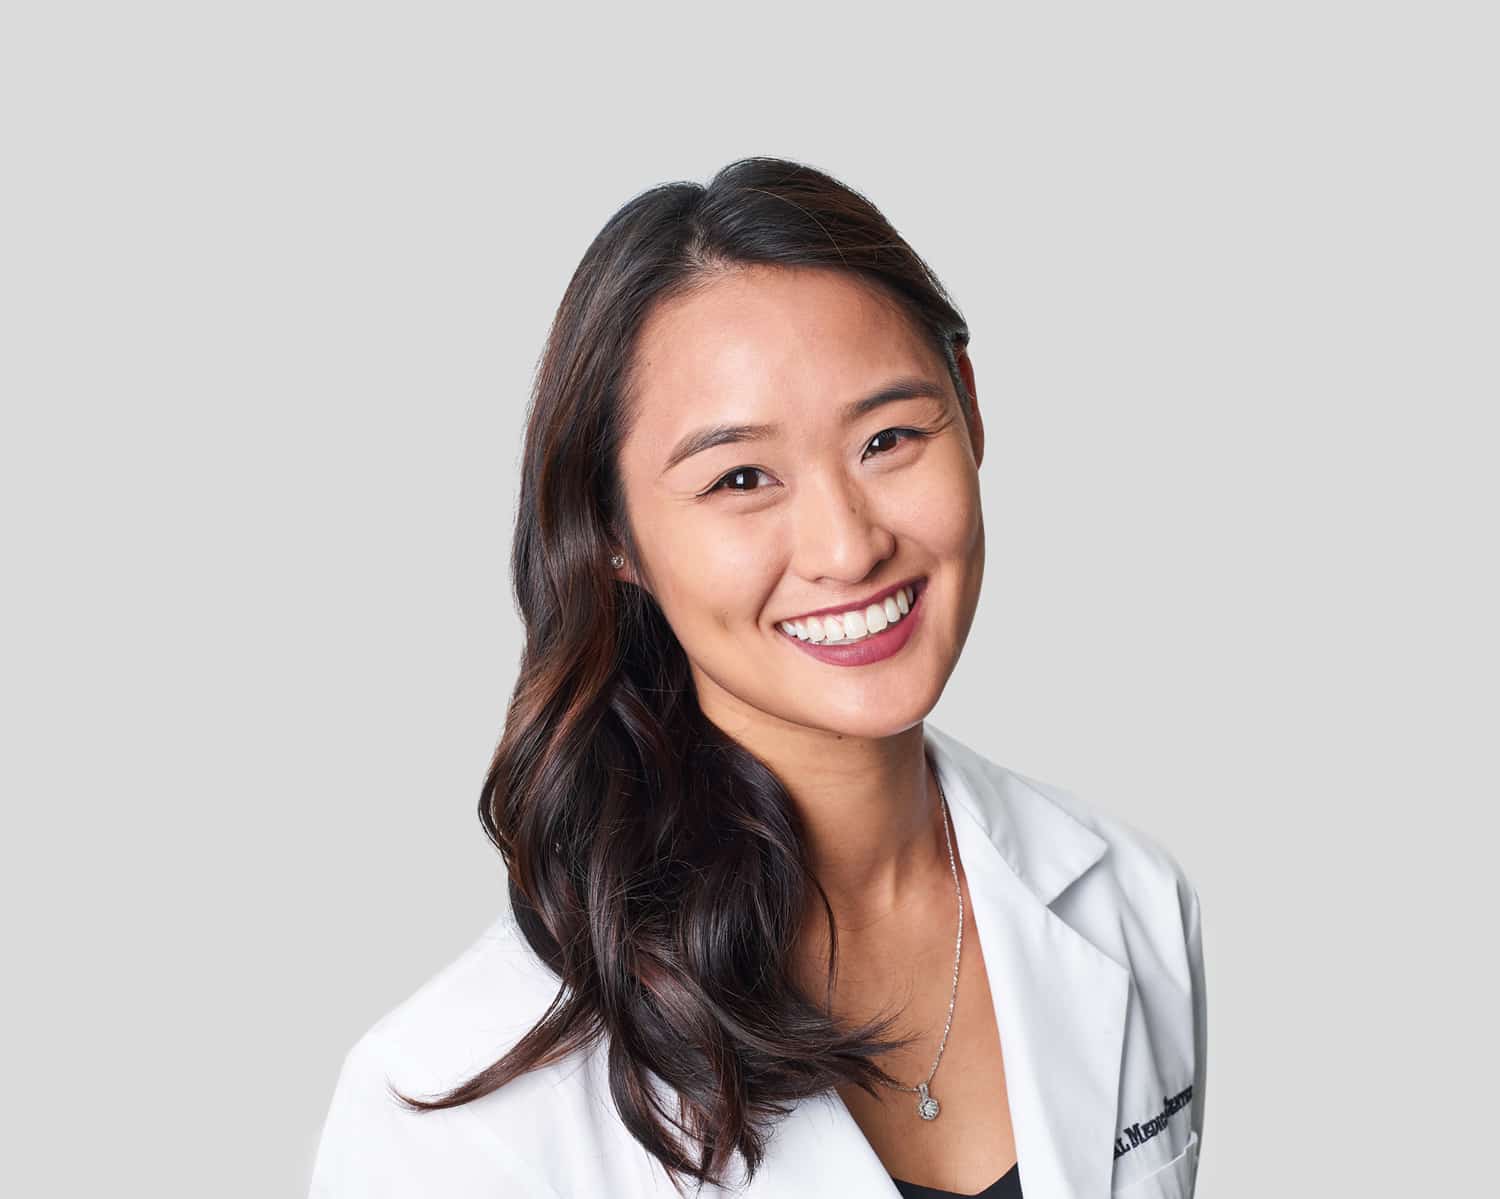 Dr. Michelle Nguyen